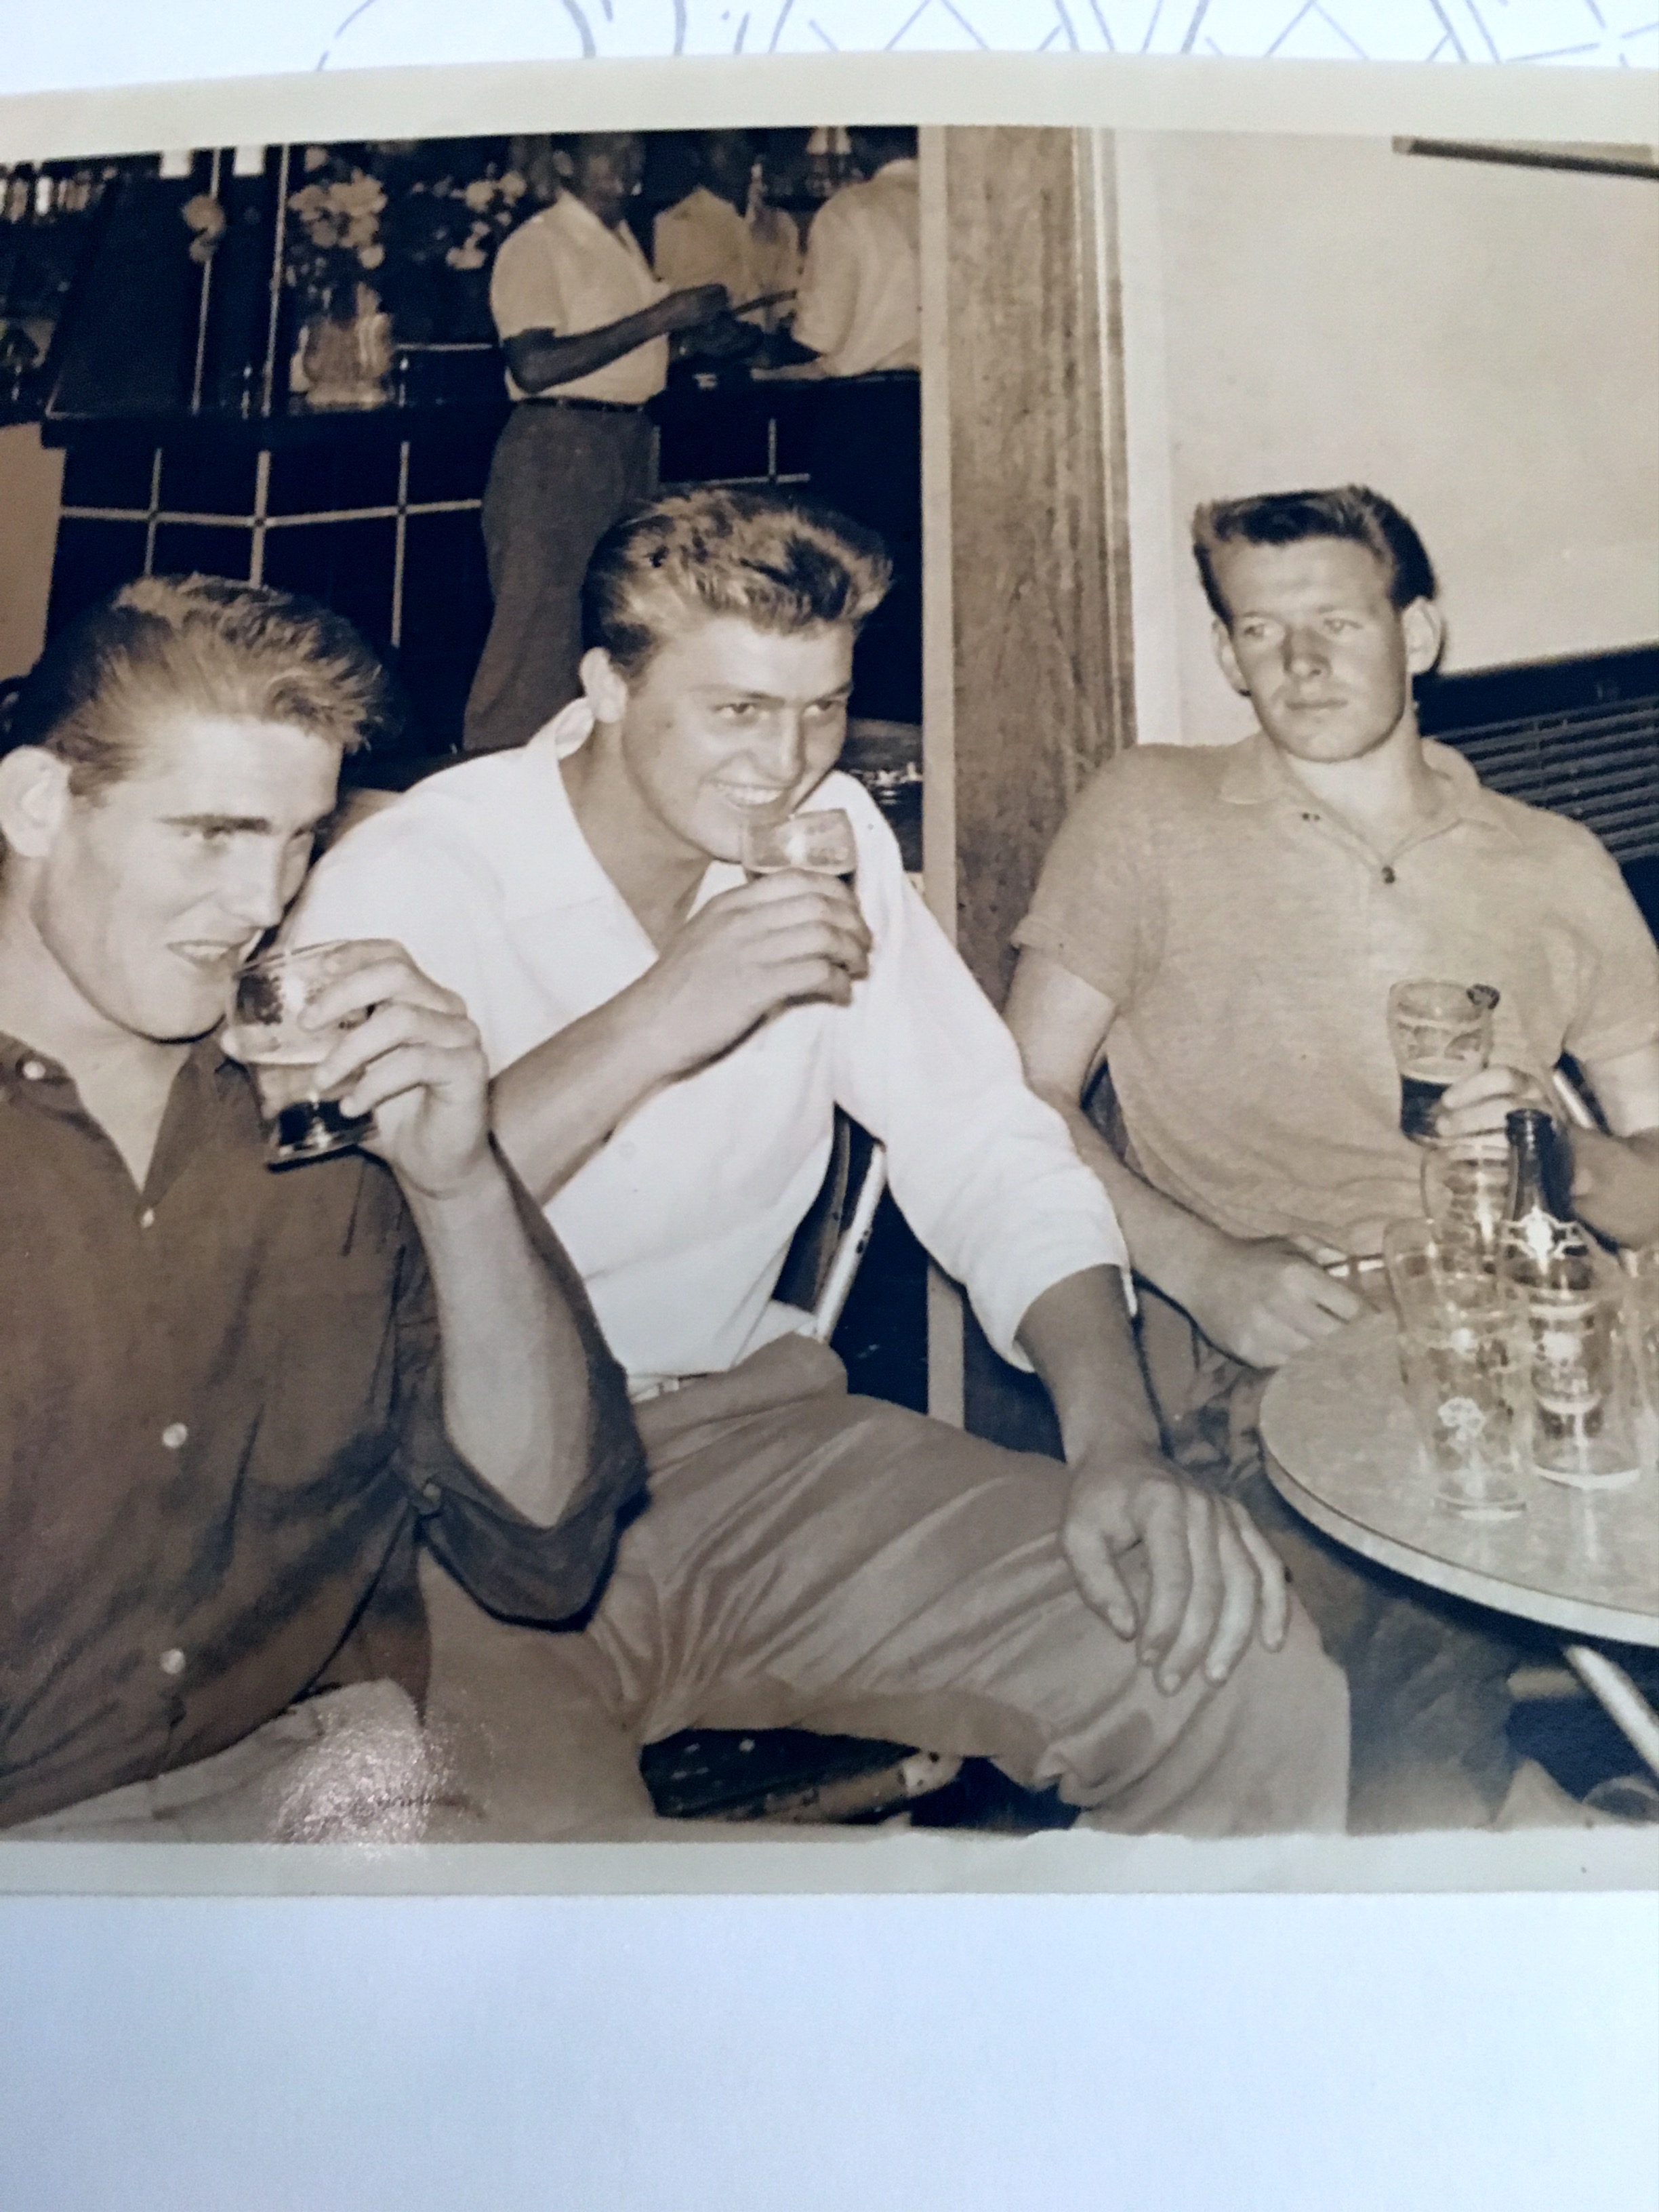 The boys 1958